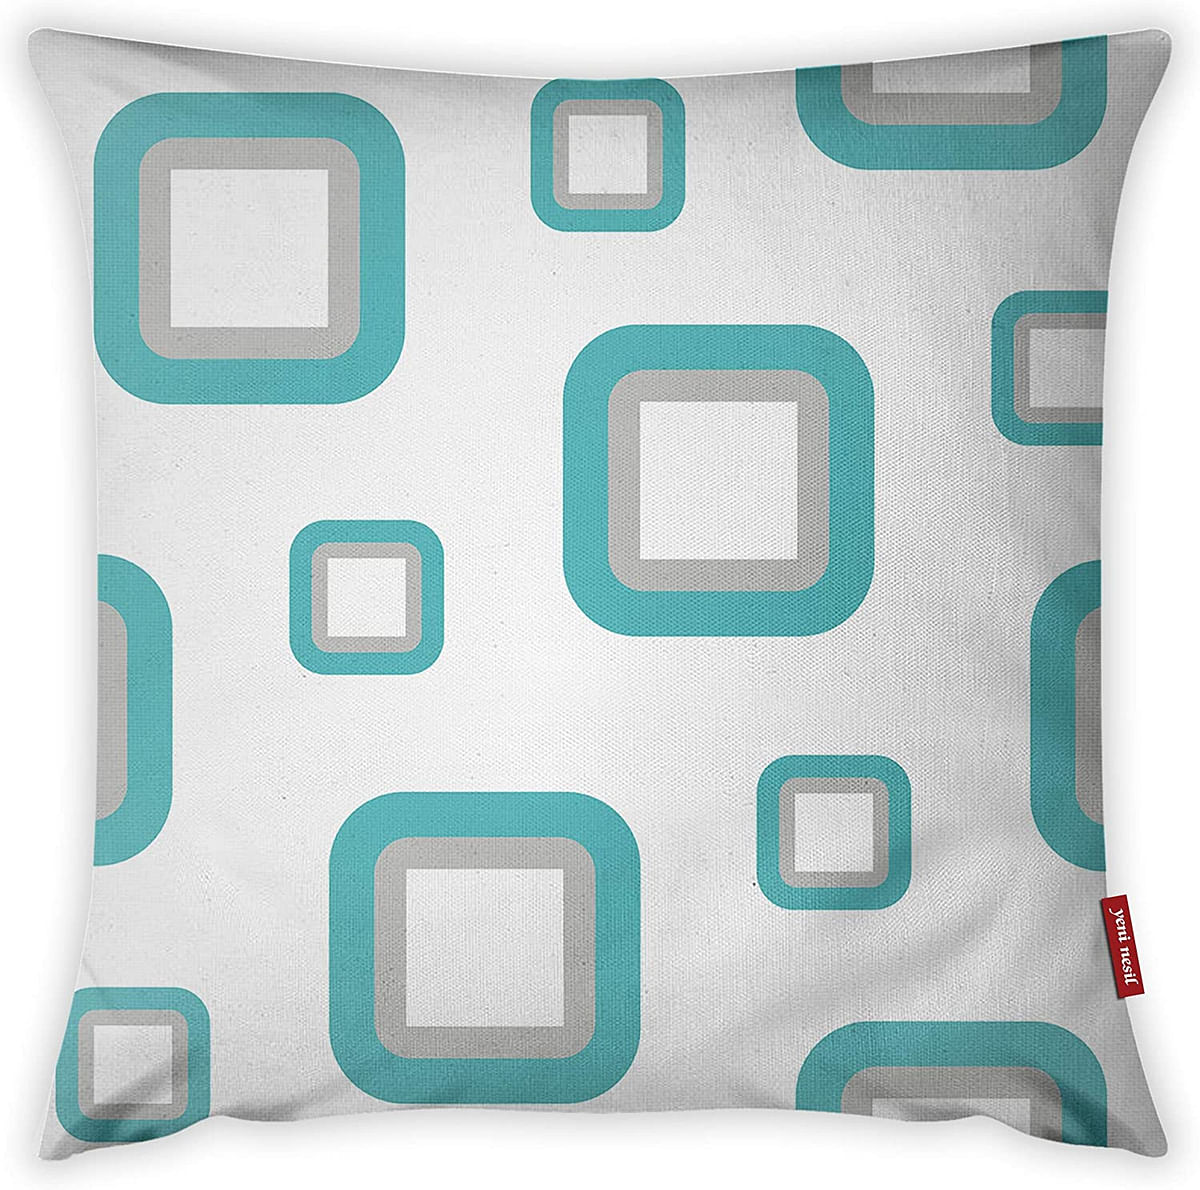 Mon Desire Decorative Throw Pillow Cover, Multi-Colour, 44 x 44 cm, MDSYST2595